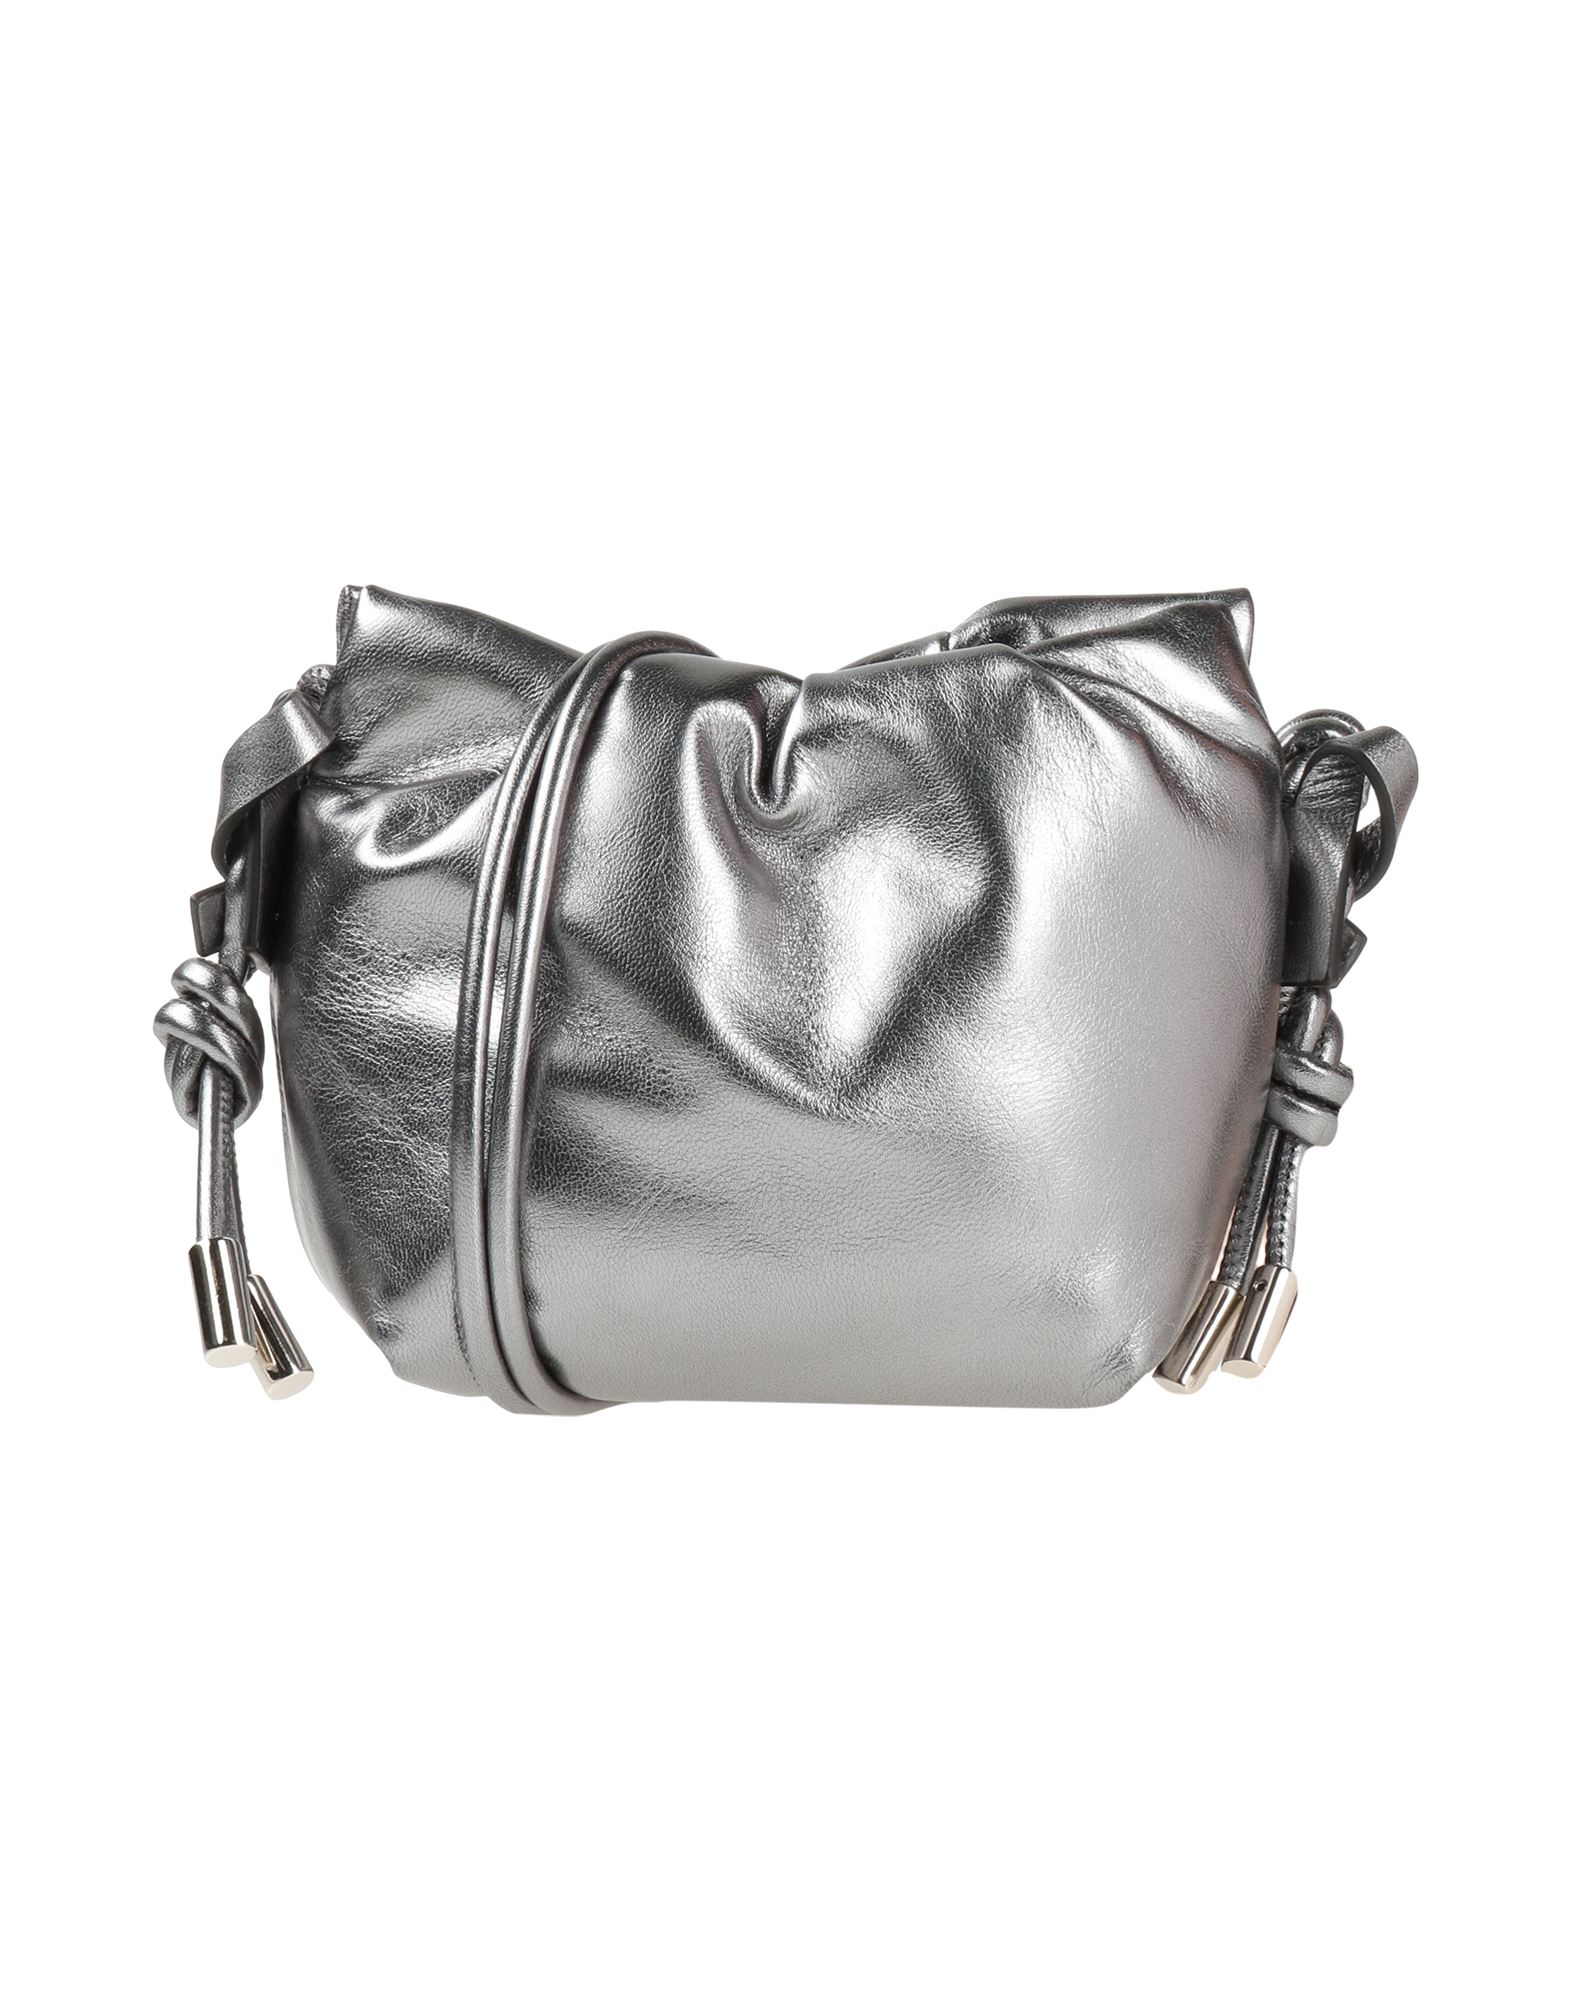 Dorothee Schumacher Handbags In Grey